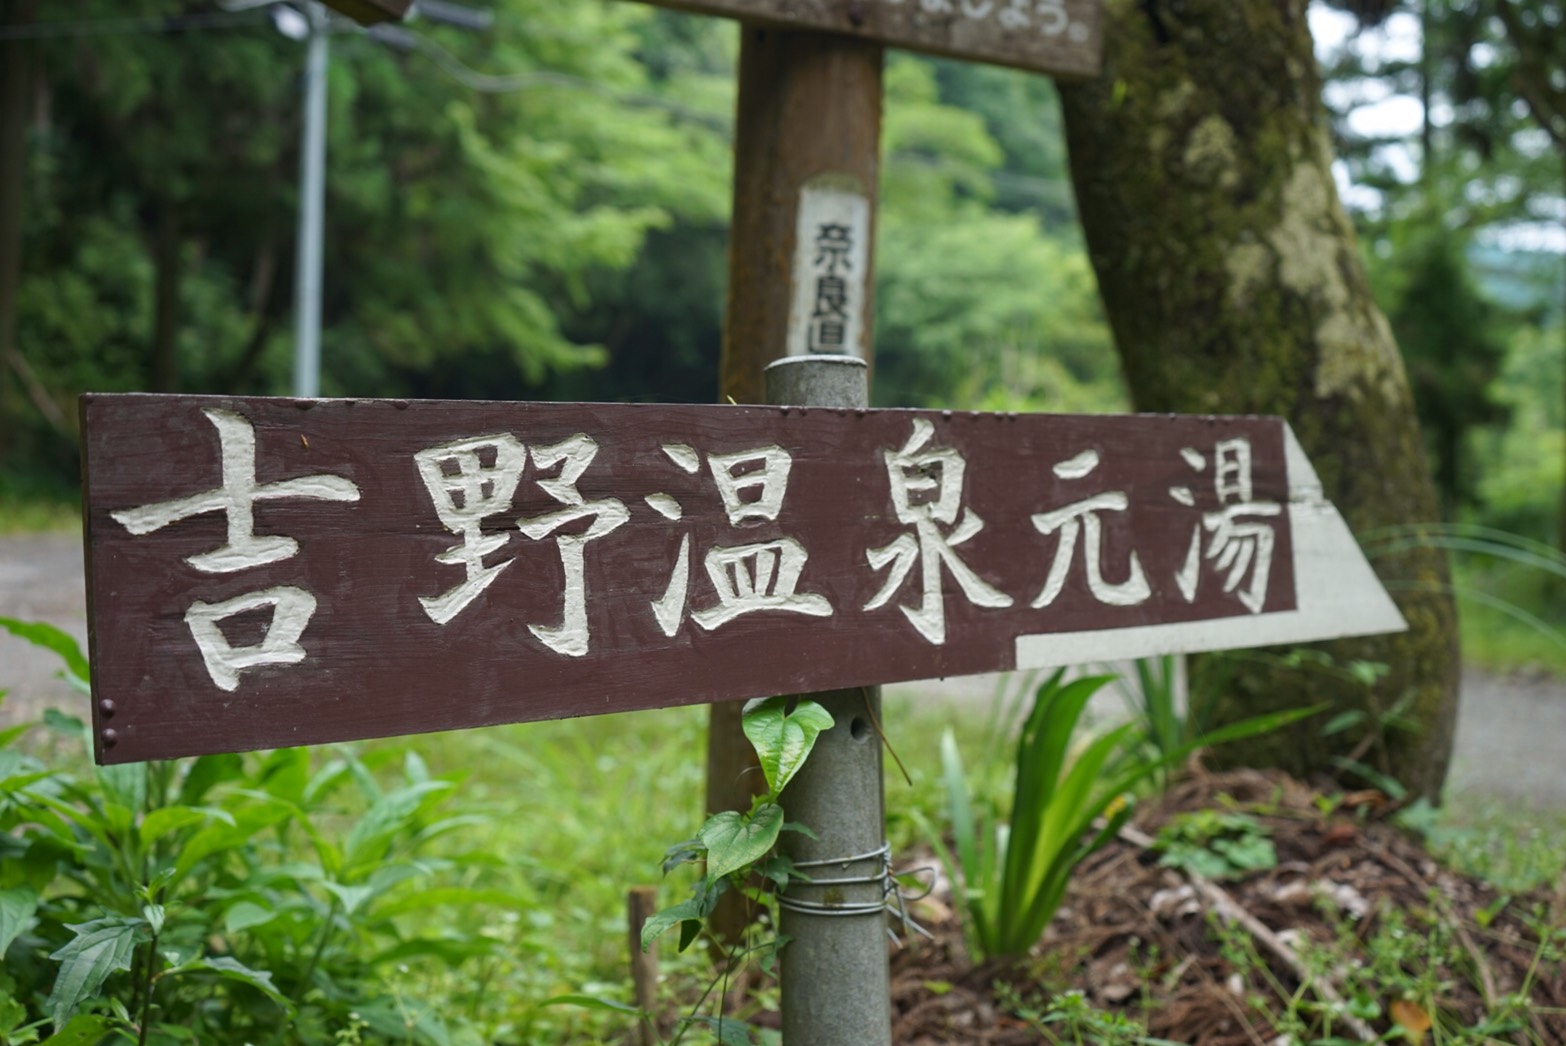 奈良県吉野温泉元湯へ日帰り旅行!アクセスやおすすめのランチなど